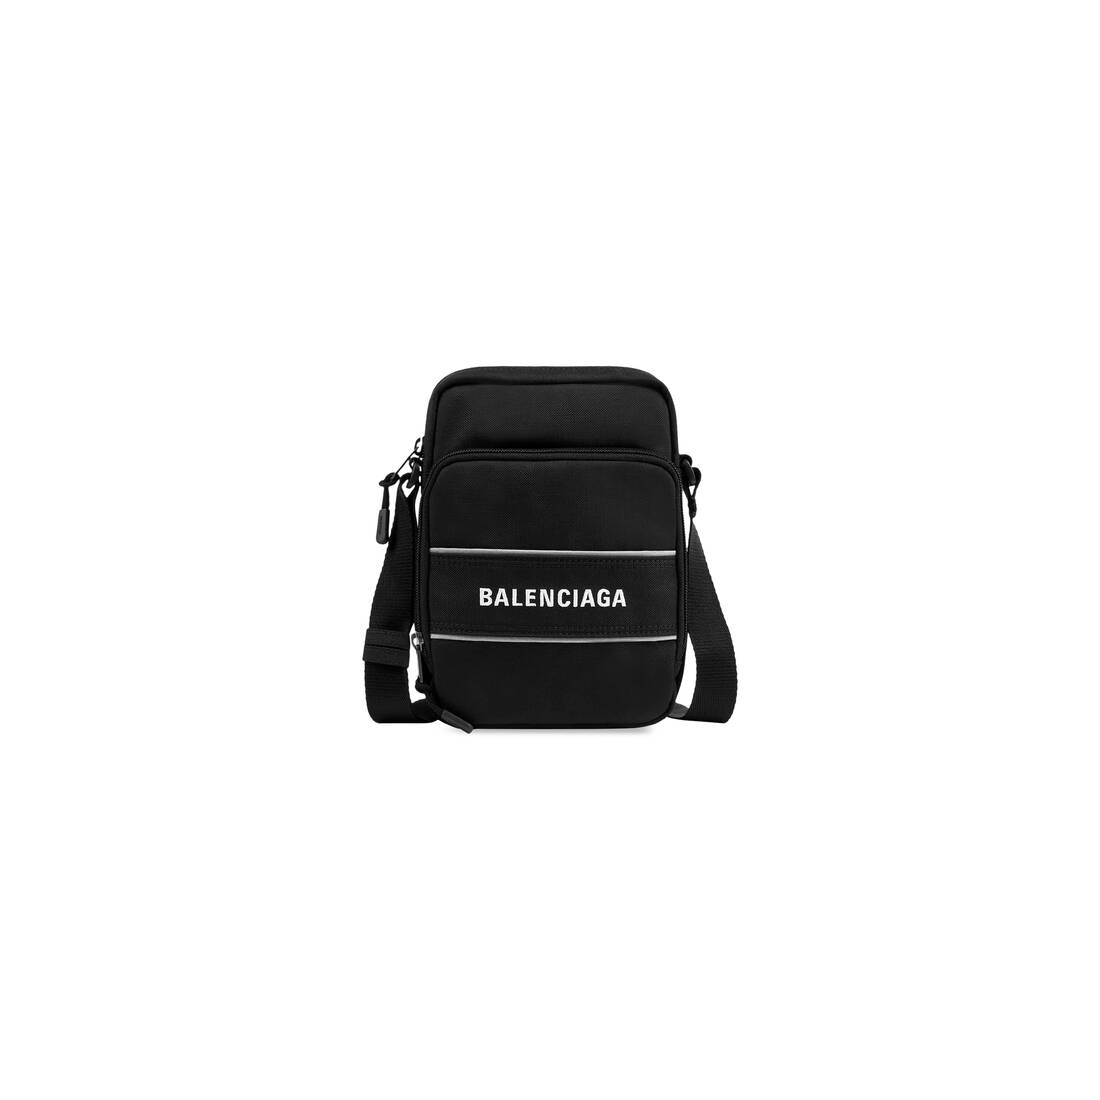 Men's Sport Small Messenger Bag in Black/white